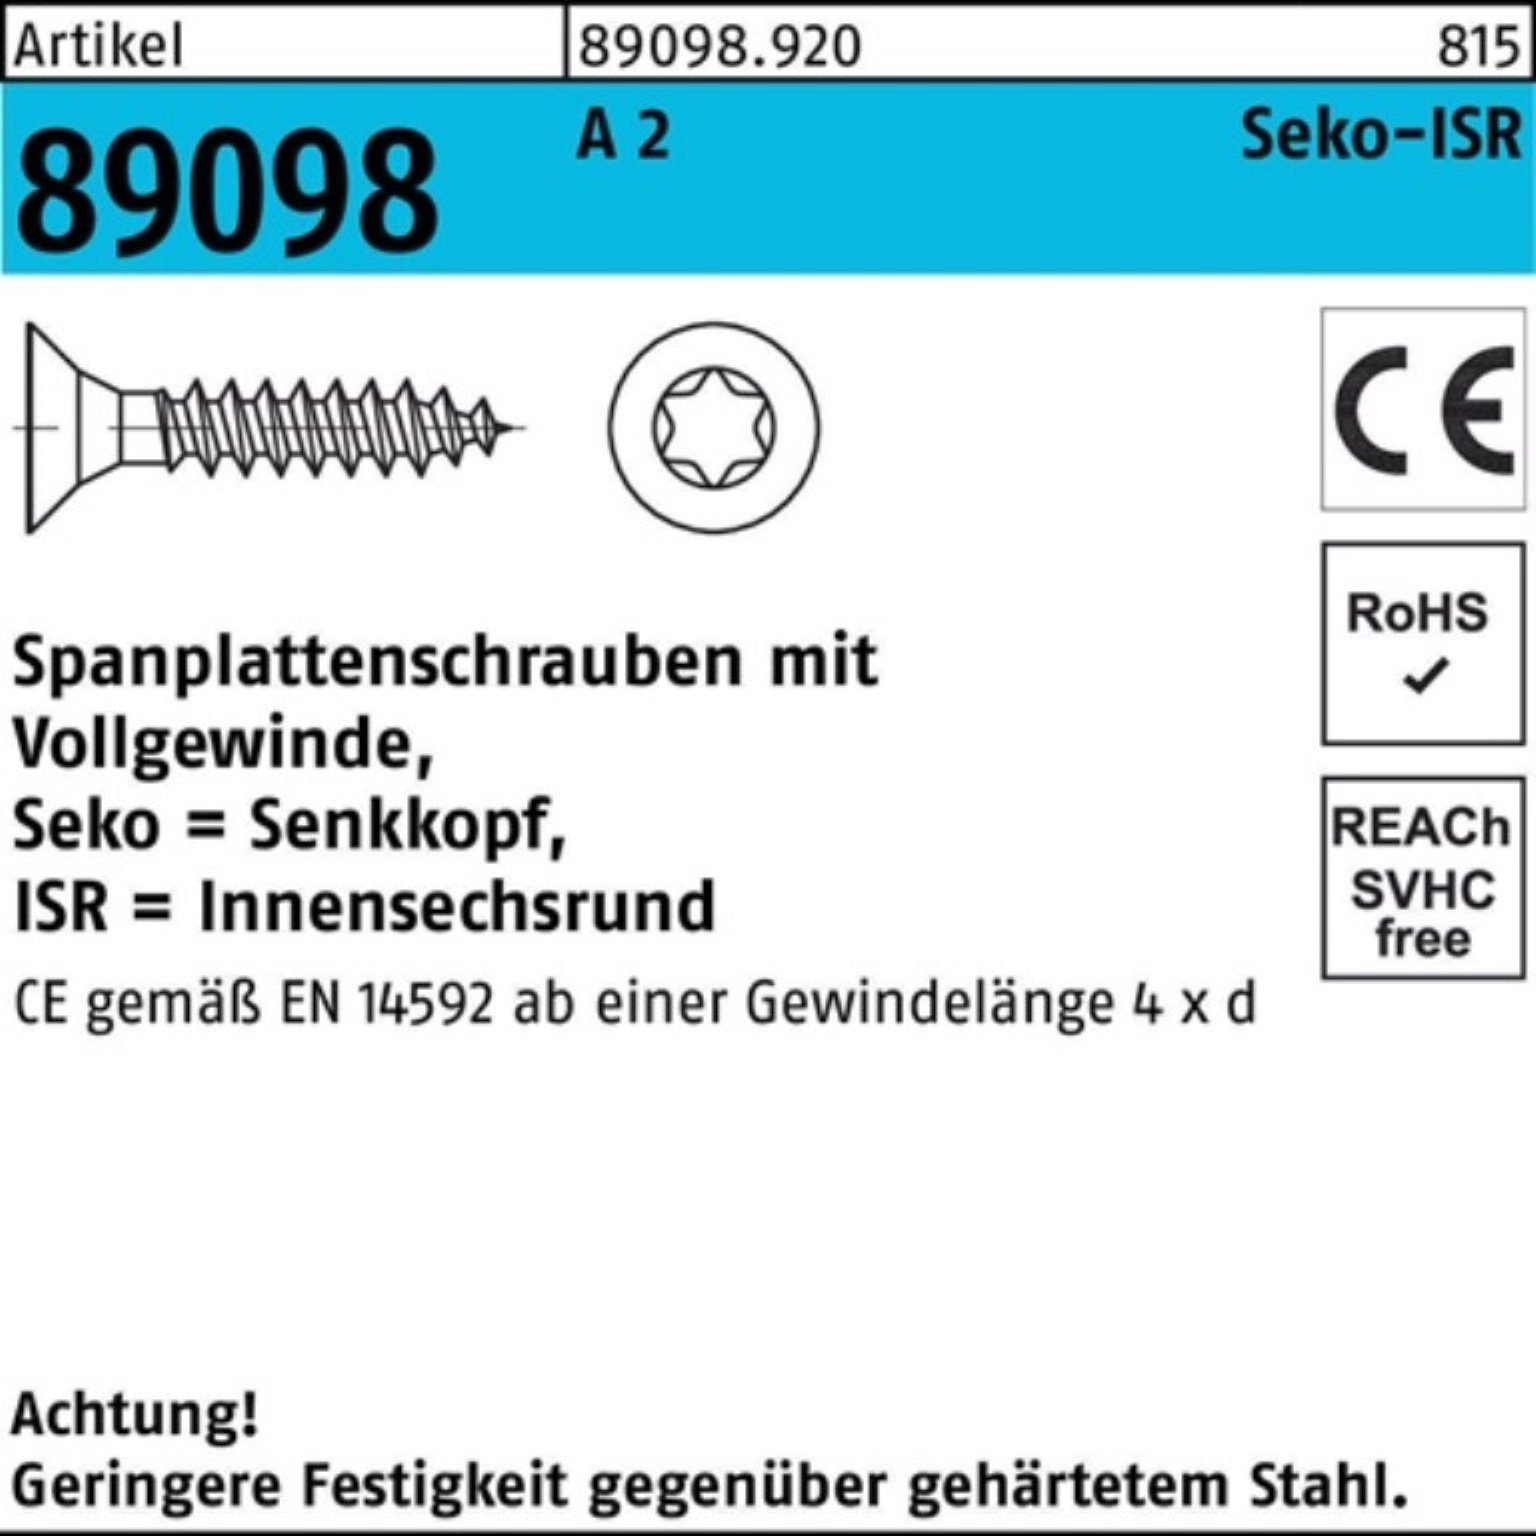 Reyher Spanplattenschraube 1000er Pack Spanplattenschraube 89098 1000 VG 40-T10 SEKO R 3x ISR A 2